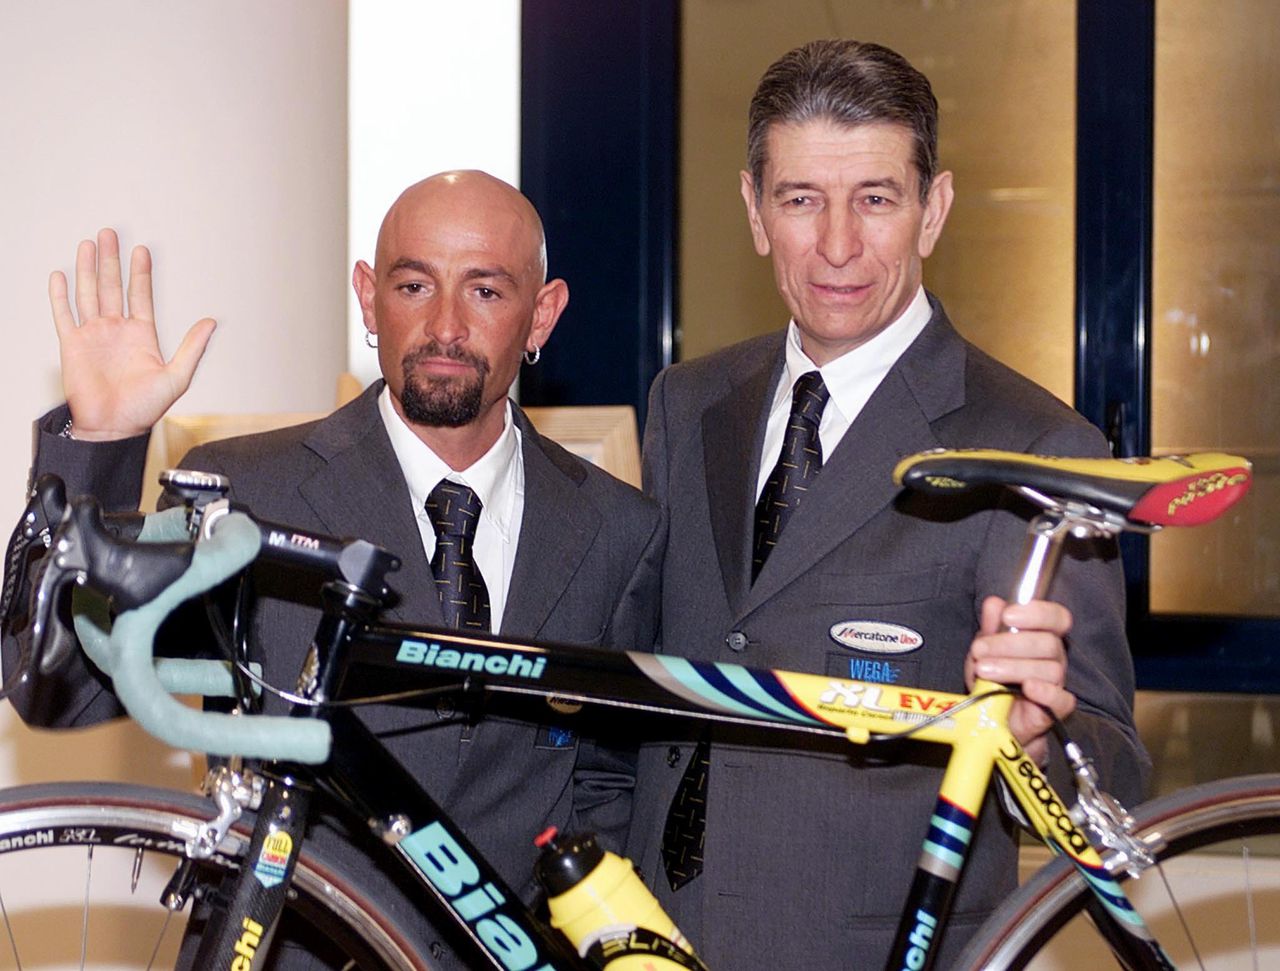 Rechts op de foto de wielerlegende Felice Gimondi, naast de inmiddels overleden Marco Pantani.